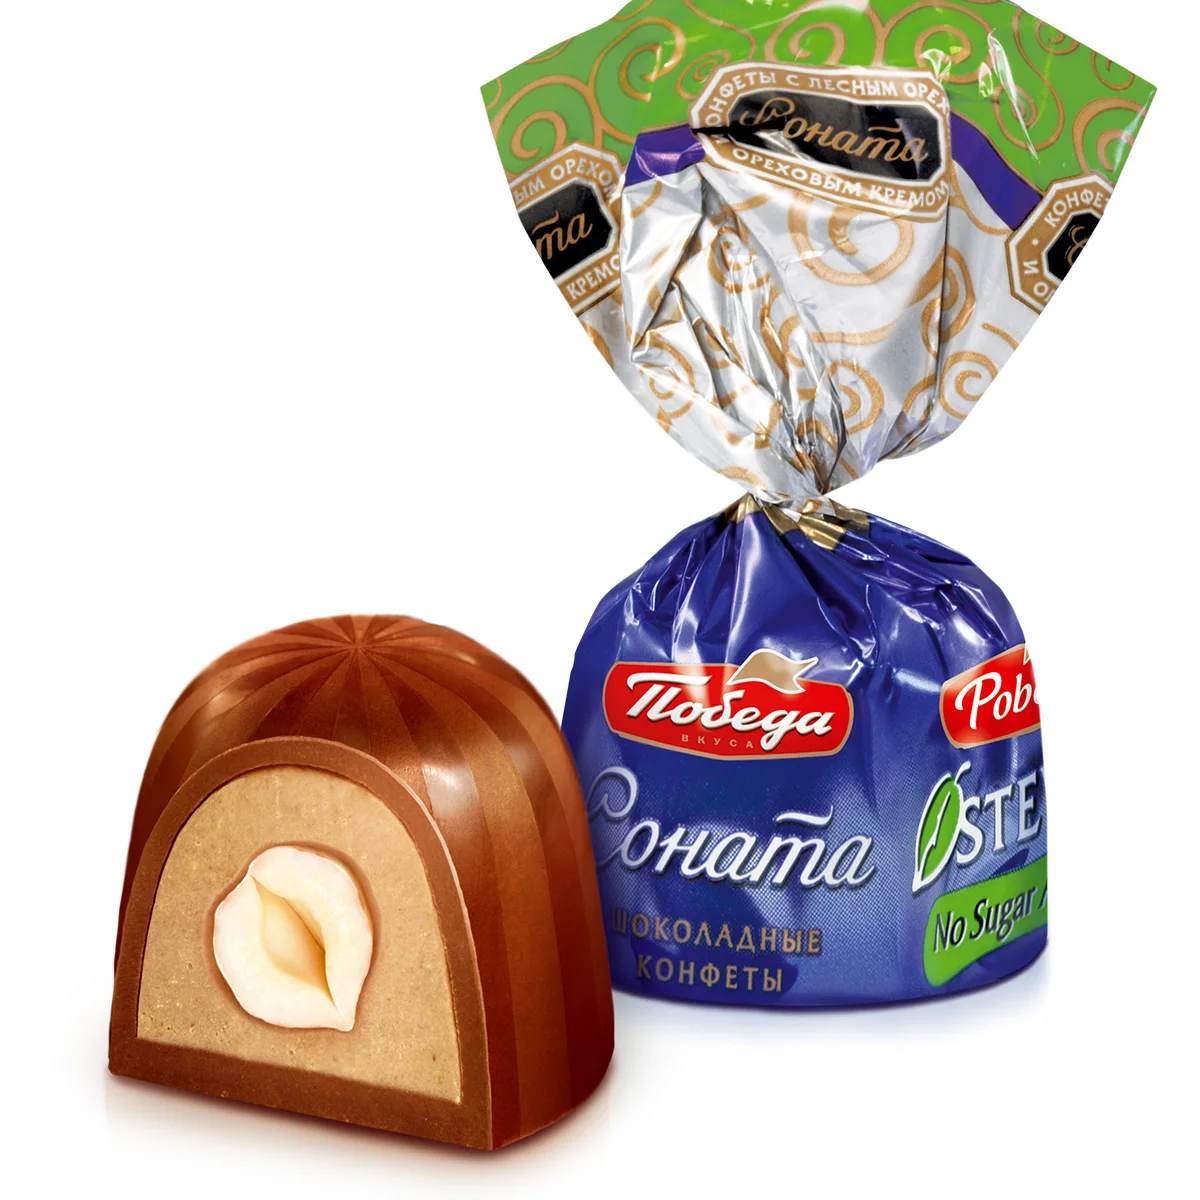 Конфеты Победа вкуса шоколадные "Соната" с лесным орехом без добавления сахара, 2000 г